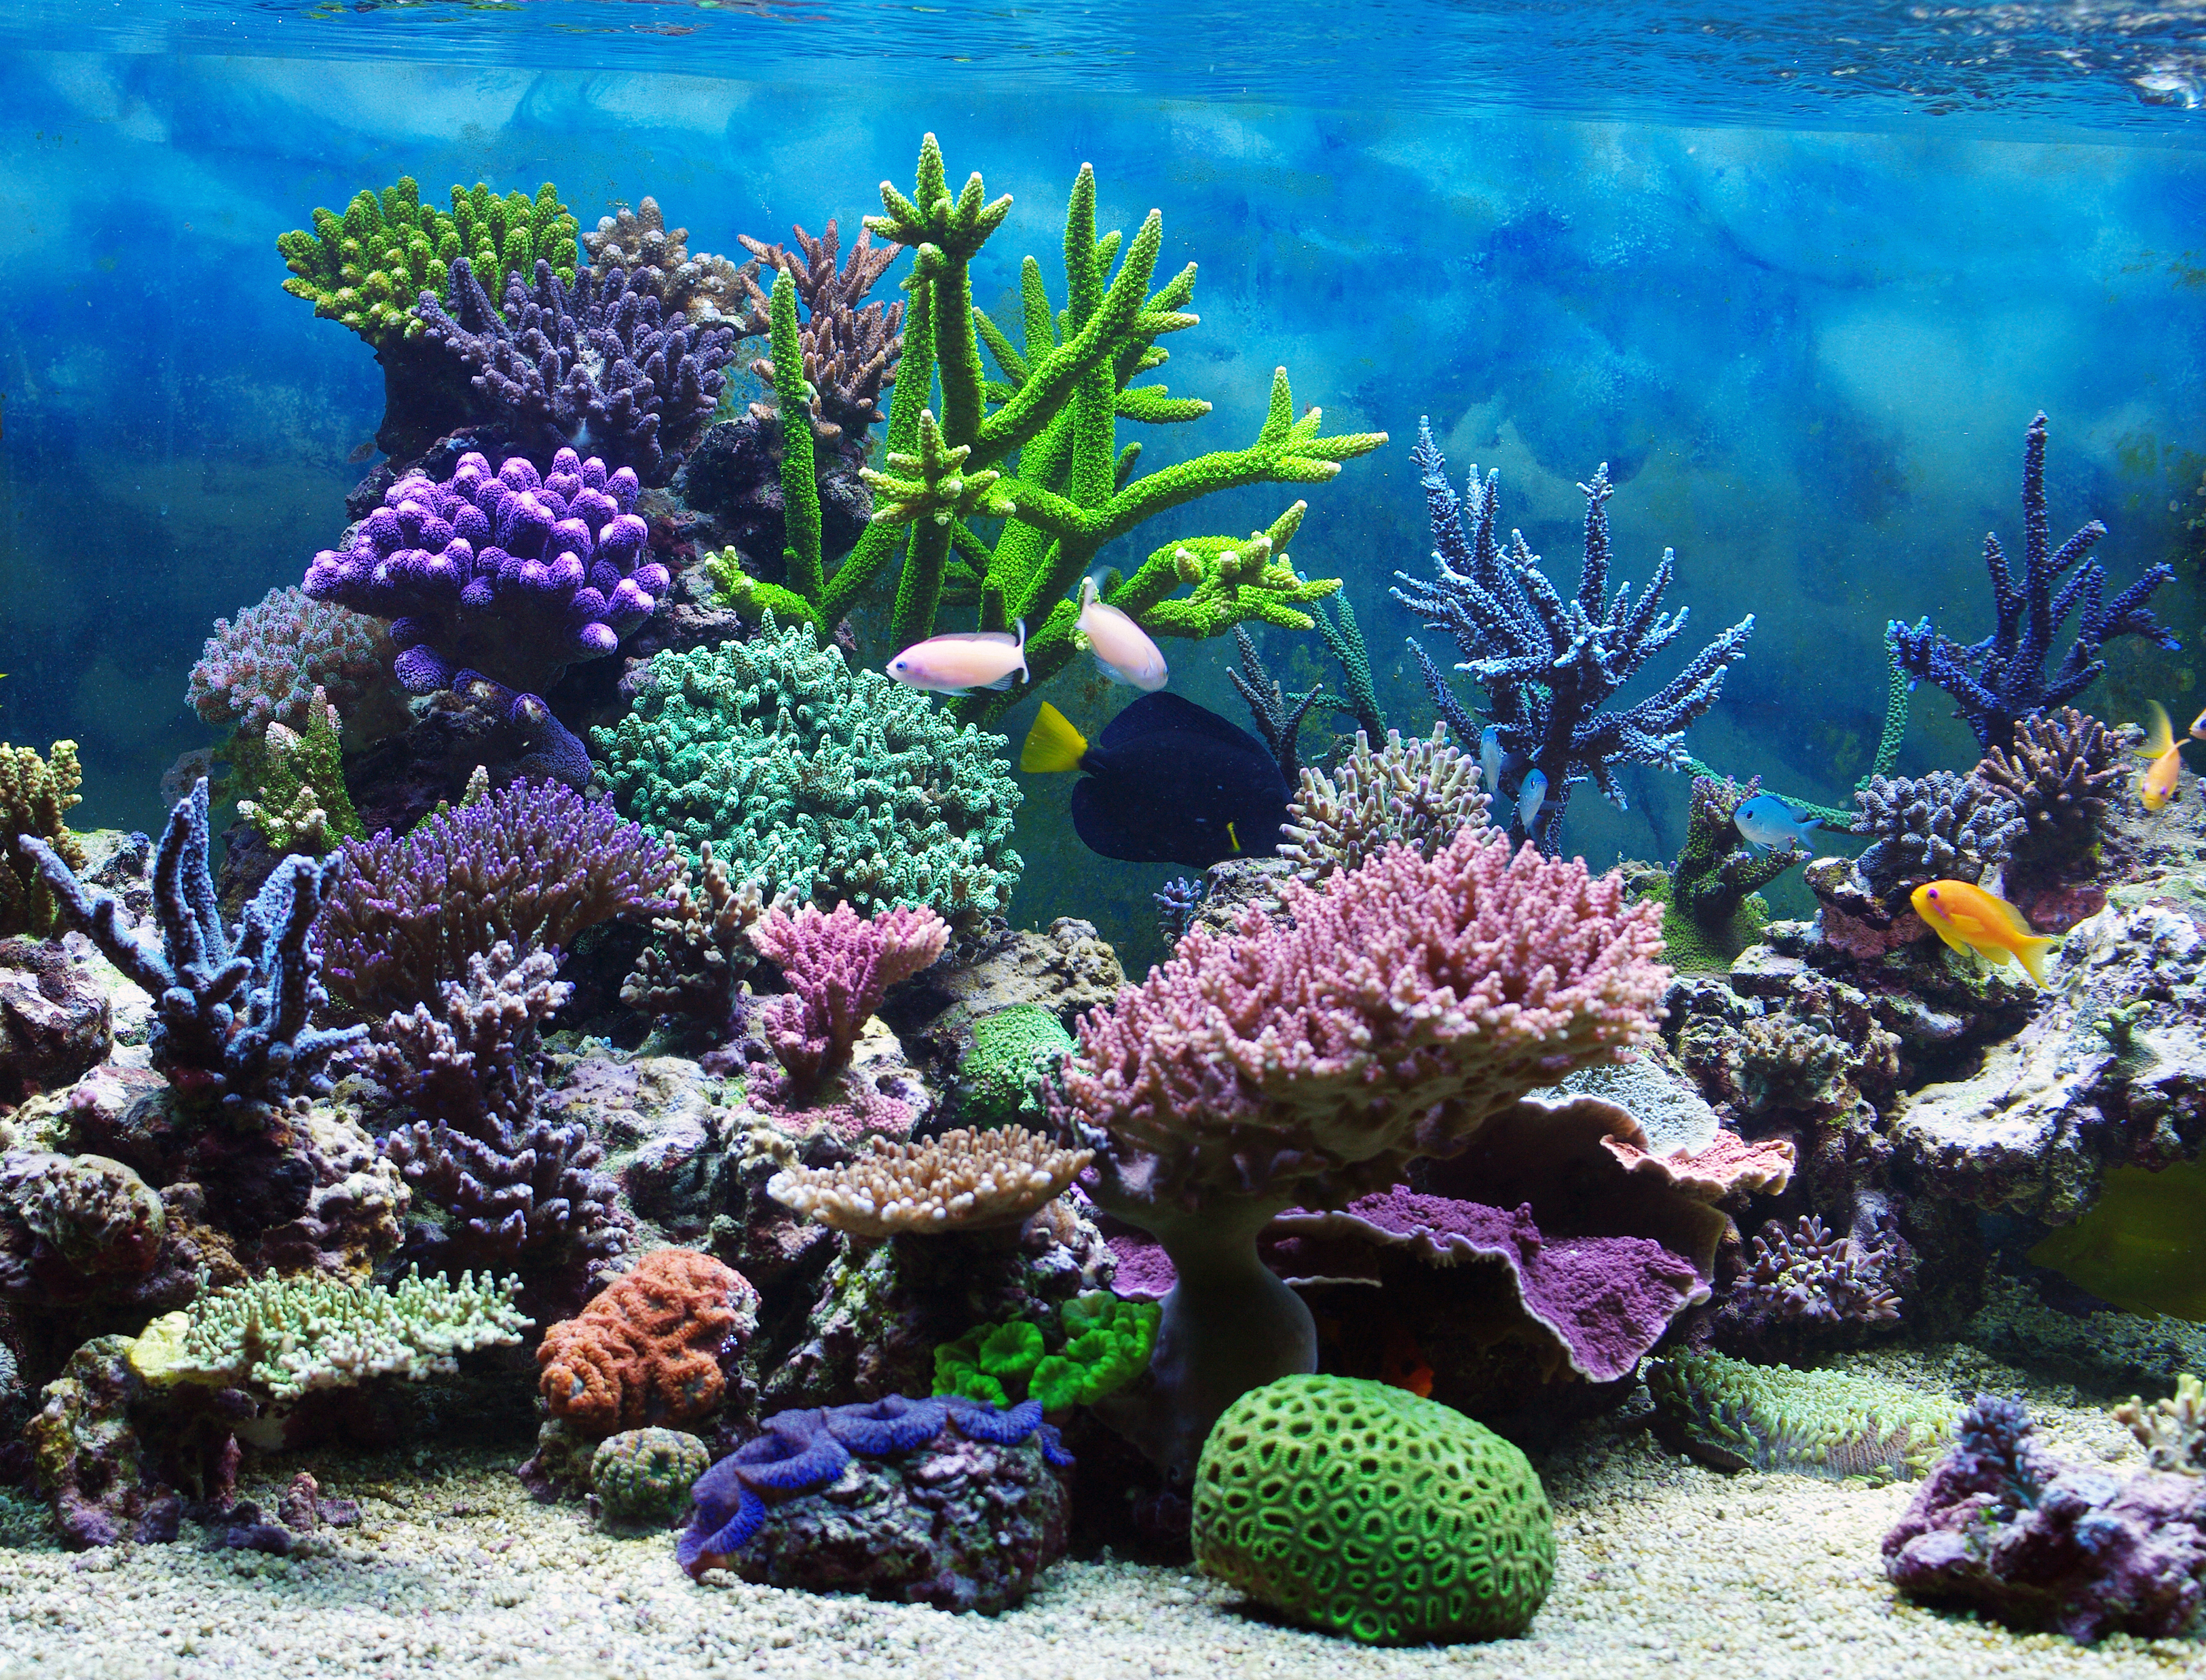 Красивые коралловые рифы. Коралловый риф кораллы. Подводный мир океана коралловый риф. Морской аквариум коралловый риф. Атлантический океан коралловый риф.